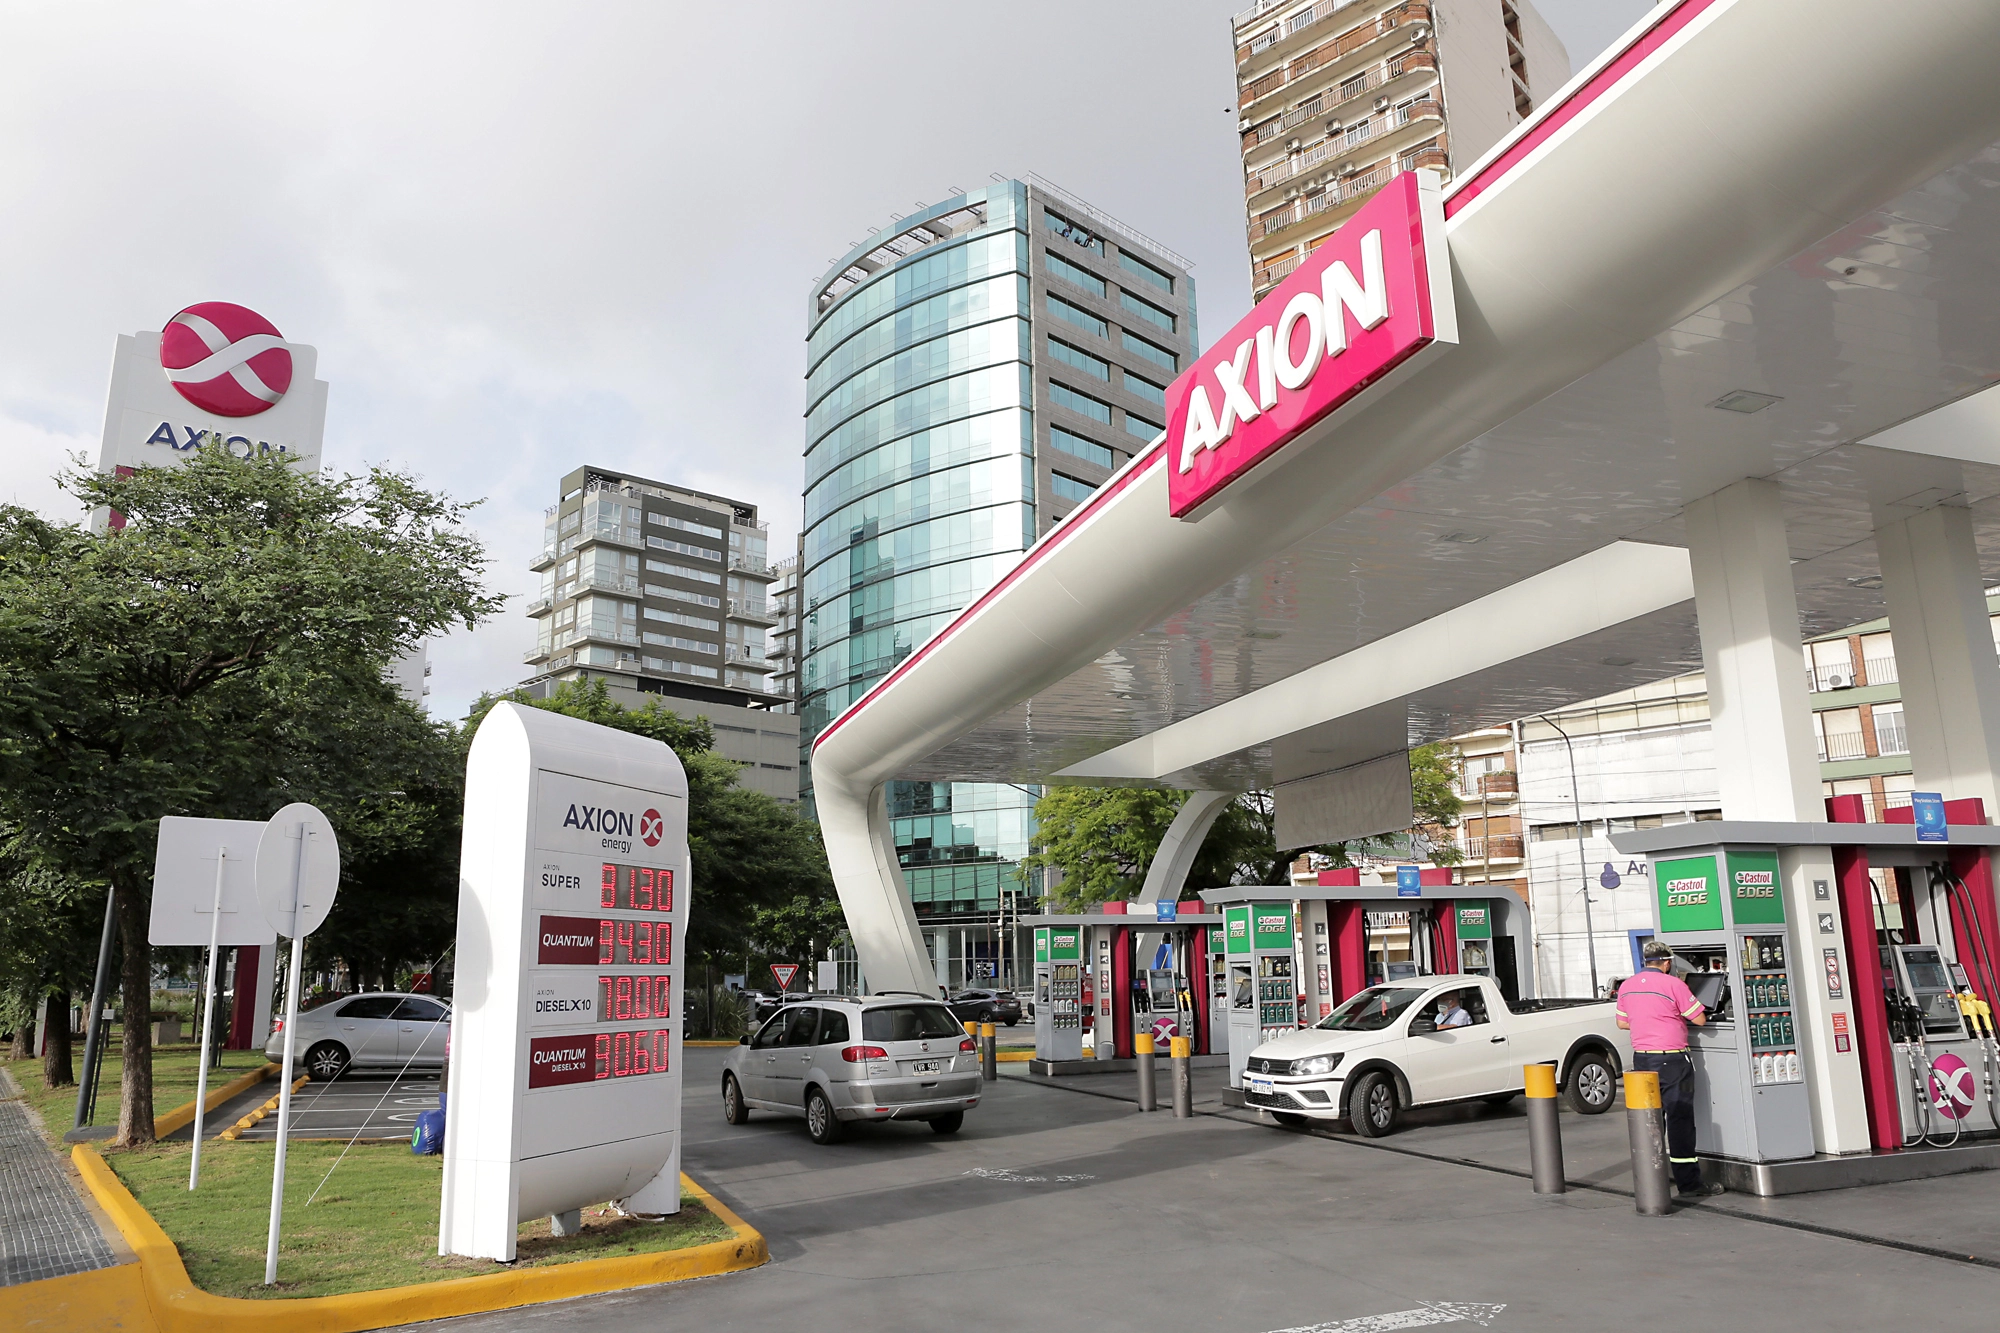 Bezpečnost zboží a vybavení ropné společnosti Axion Energy poskytuje AxxonSoft VMS